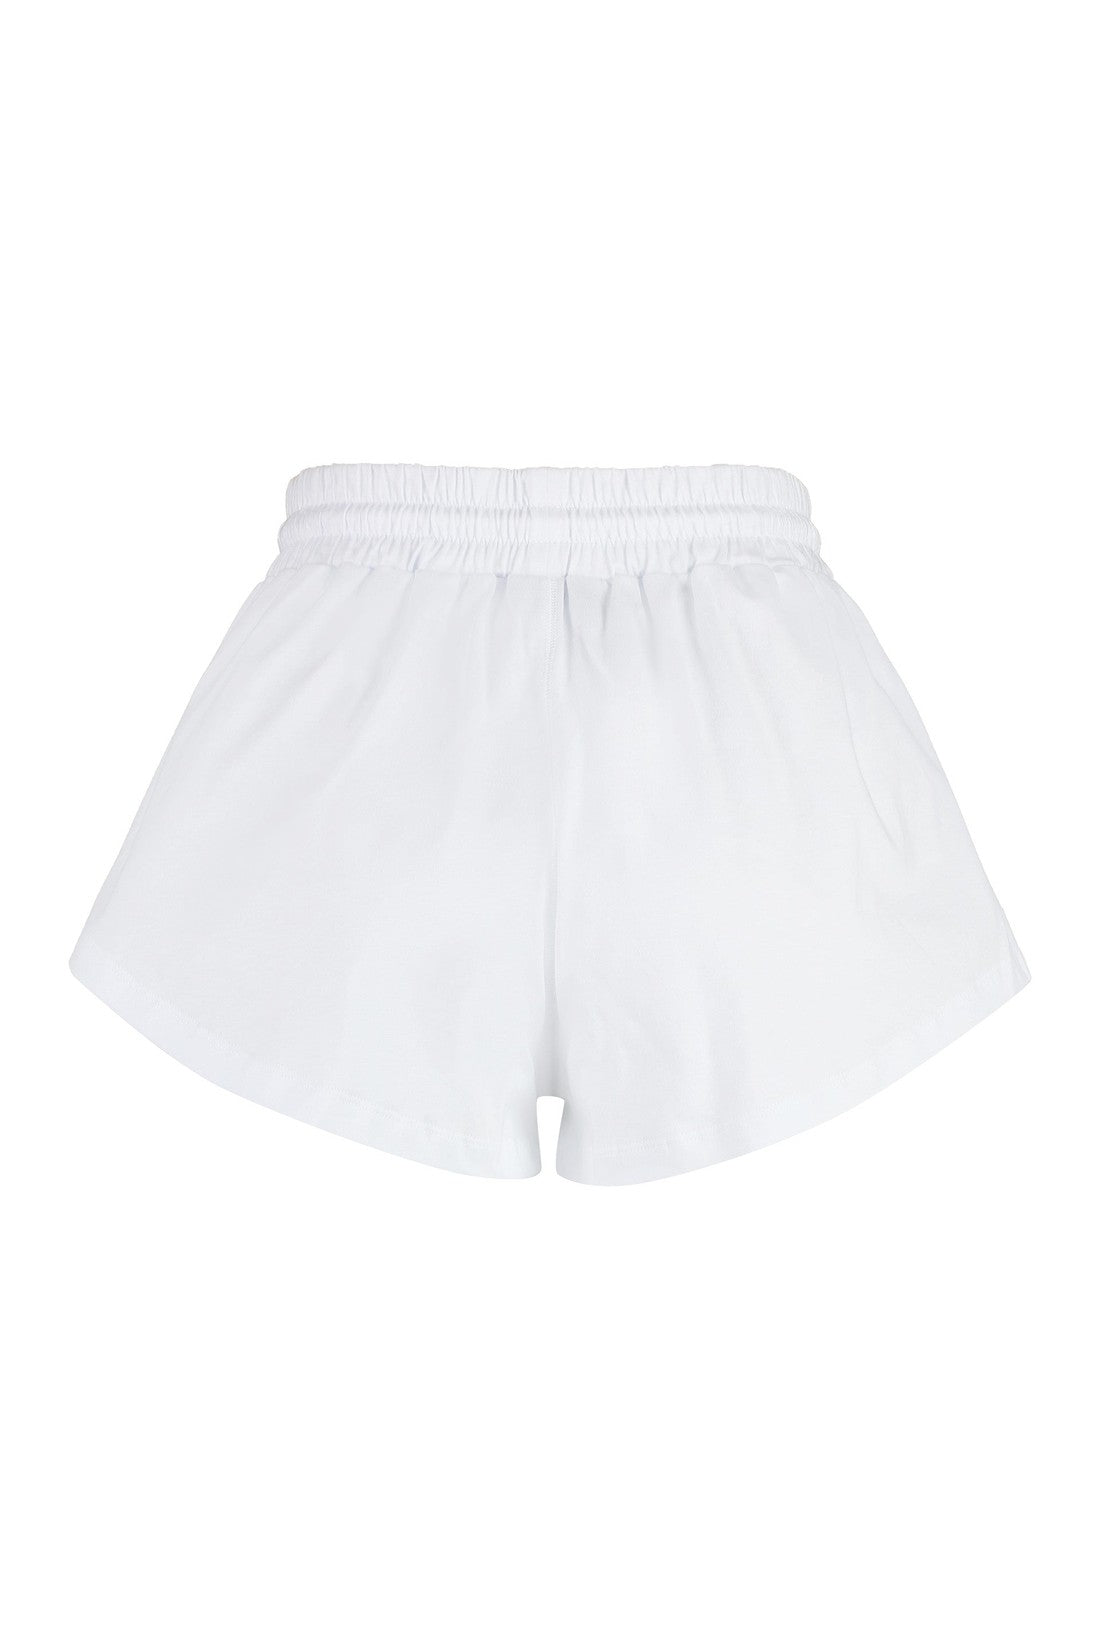 MSGM-OUTLET-SALE-Cotton shorts-ARCHIVIST